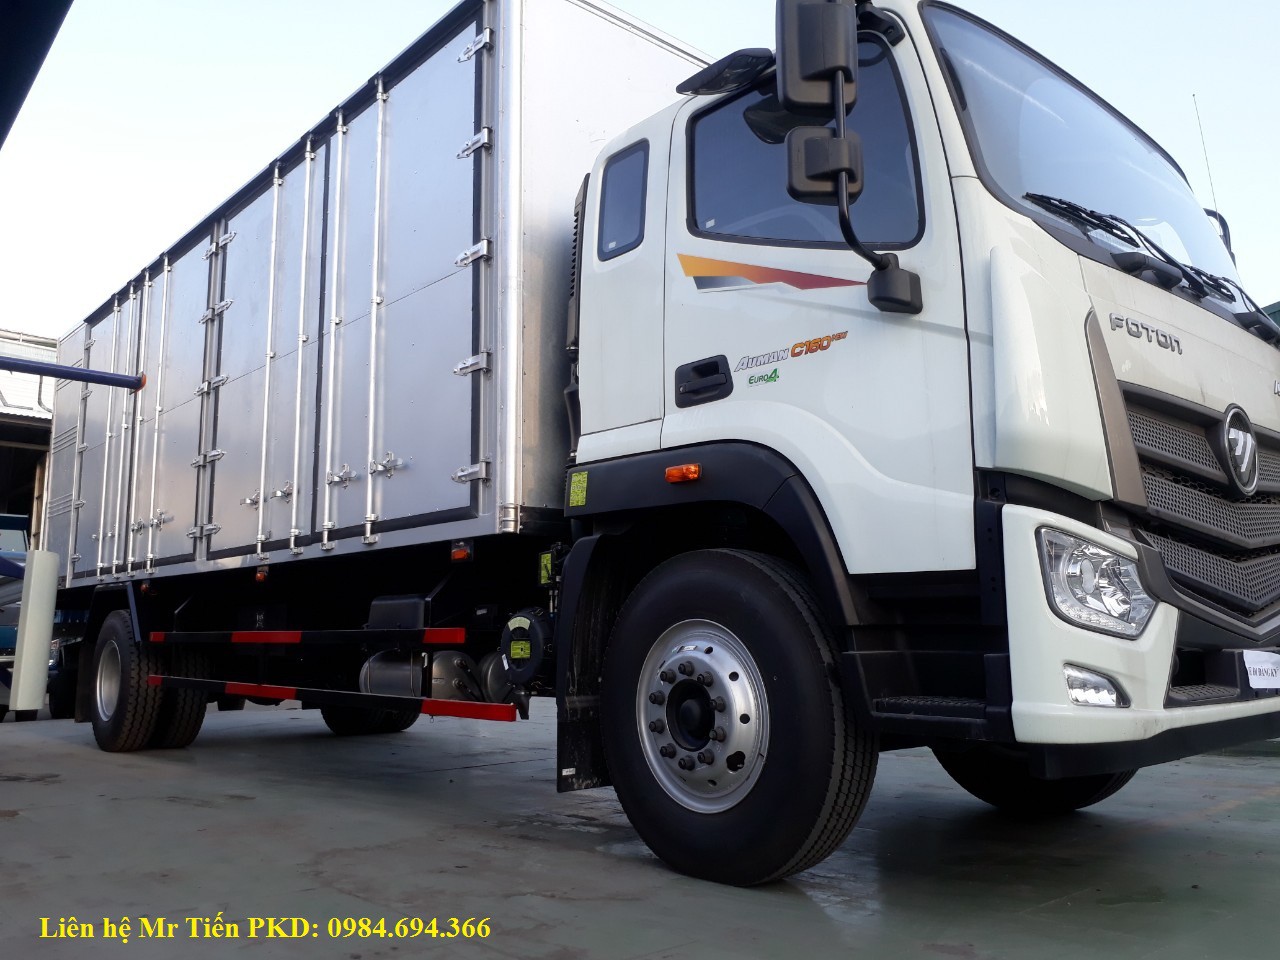 Xe tải Thaco Auman C160 thùng dài 7.4m máy 170 PS, đóng các loại thùng bạt, kín mở 4 cửa hông, hỗ trợ trả góp giá tốt